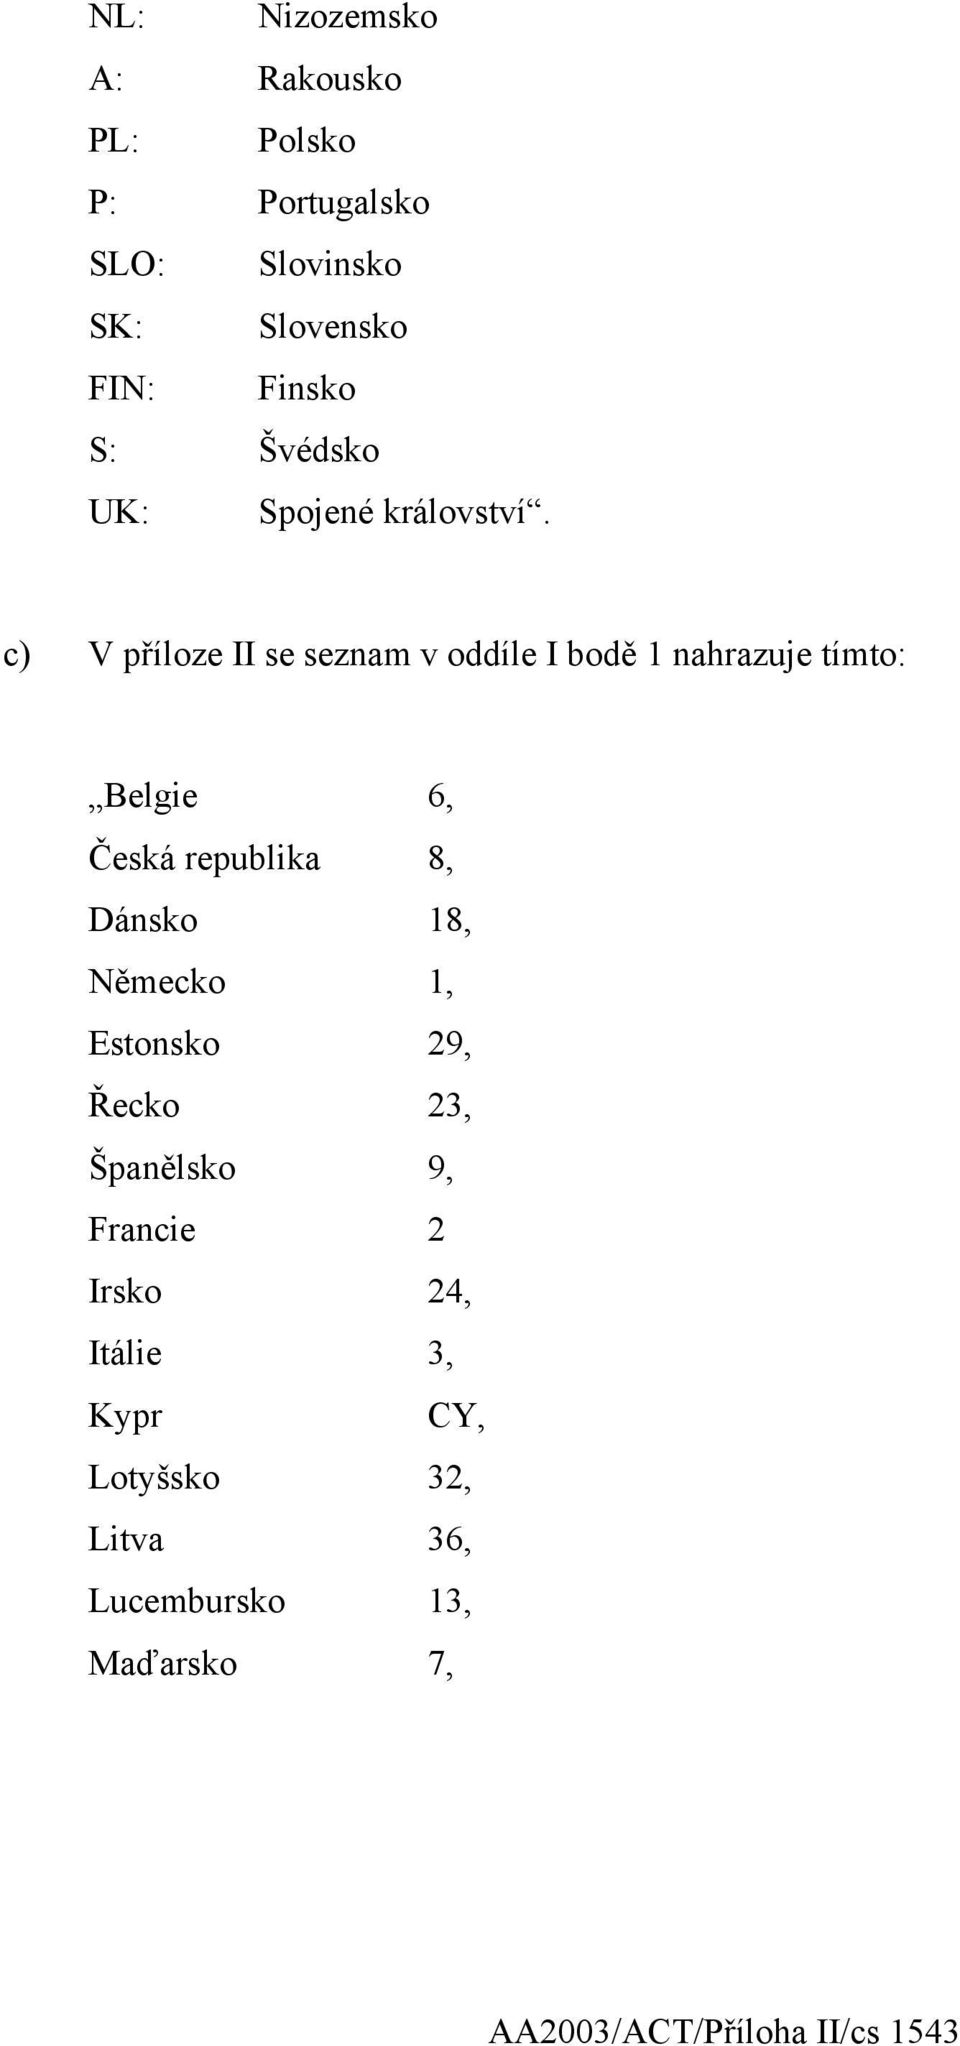 c) V příloze II se seznam v oddíle I bodě 1 nahrazuje tímto: Belgie 6, Česká republika 8, Dánsko